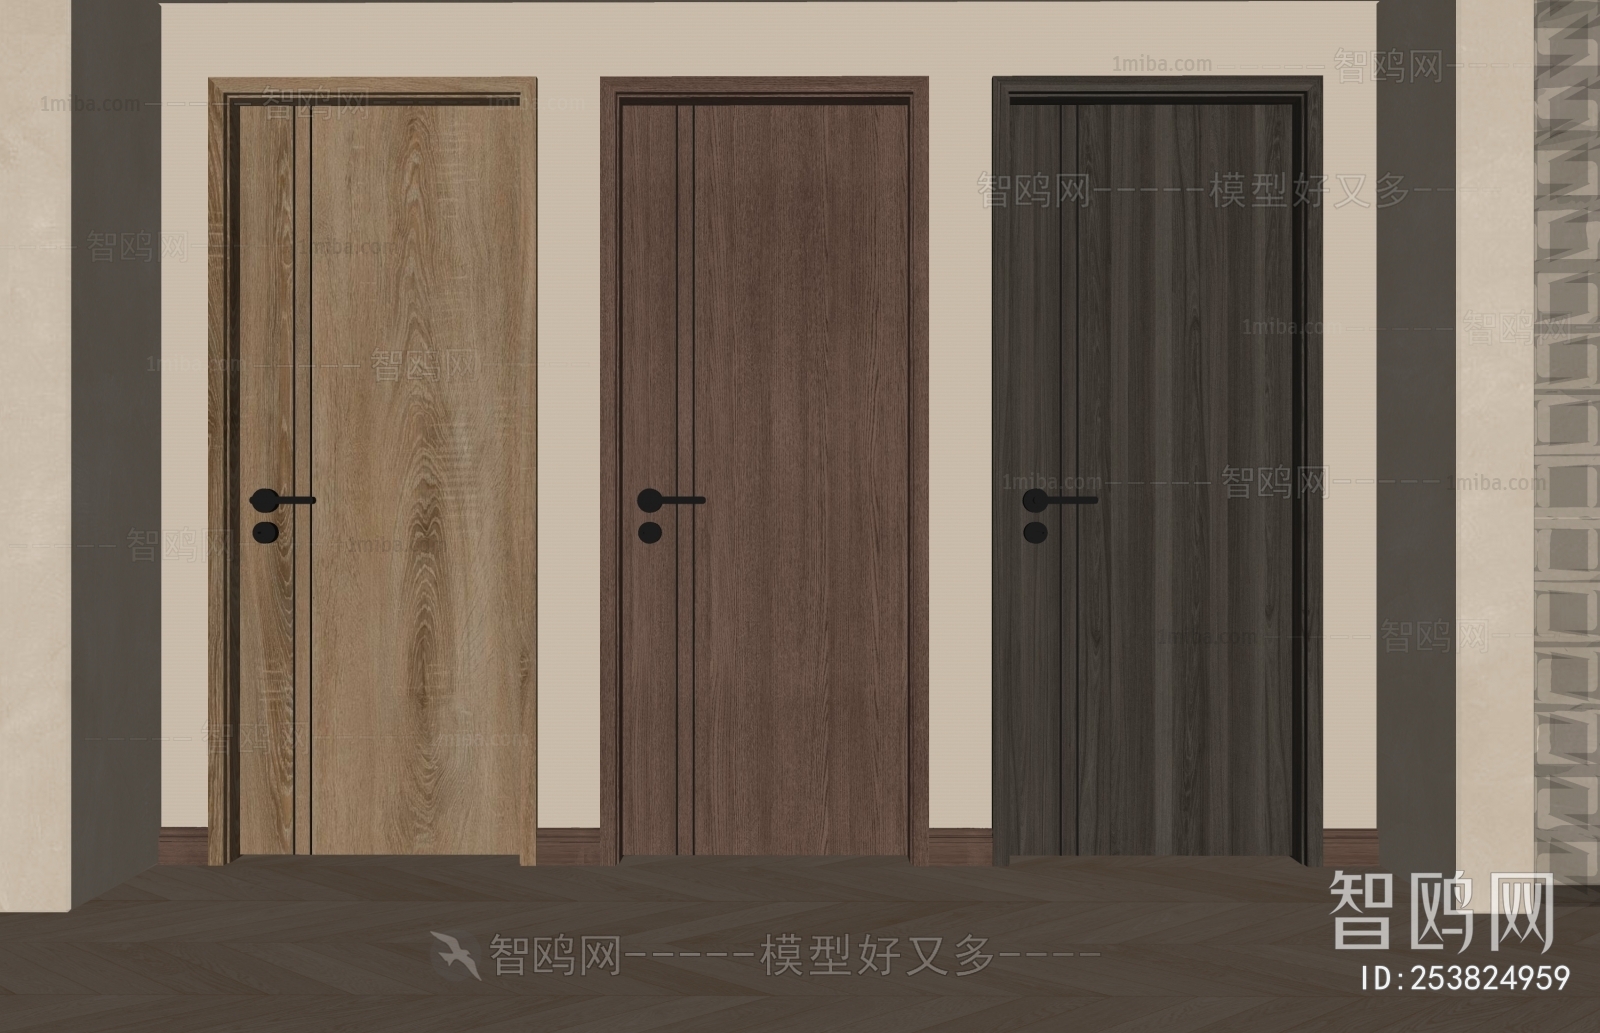 Wabi-sabi Style Single Door